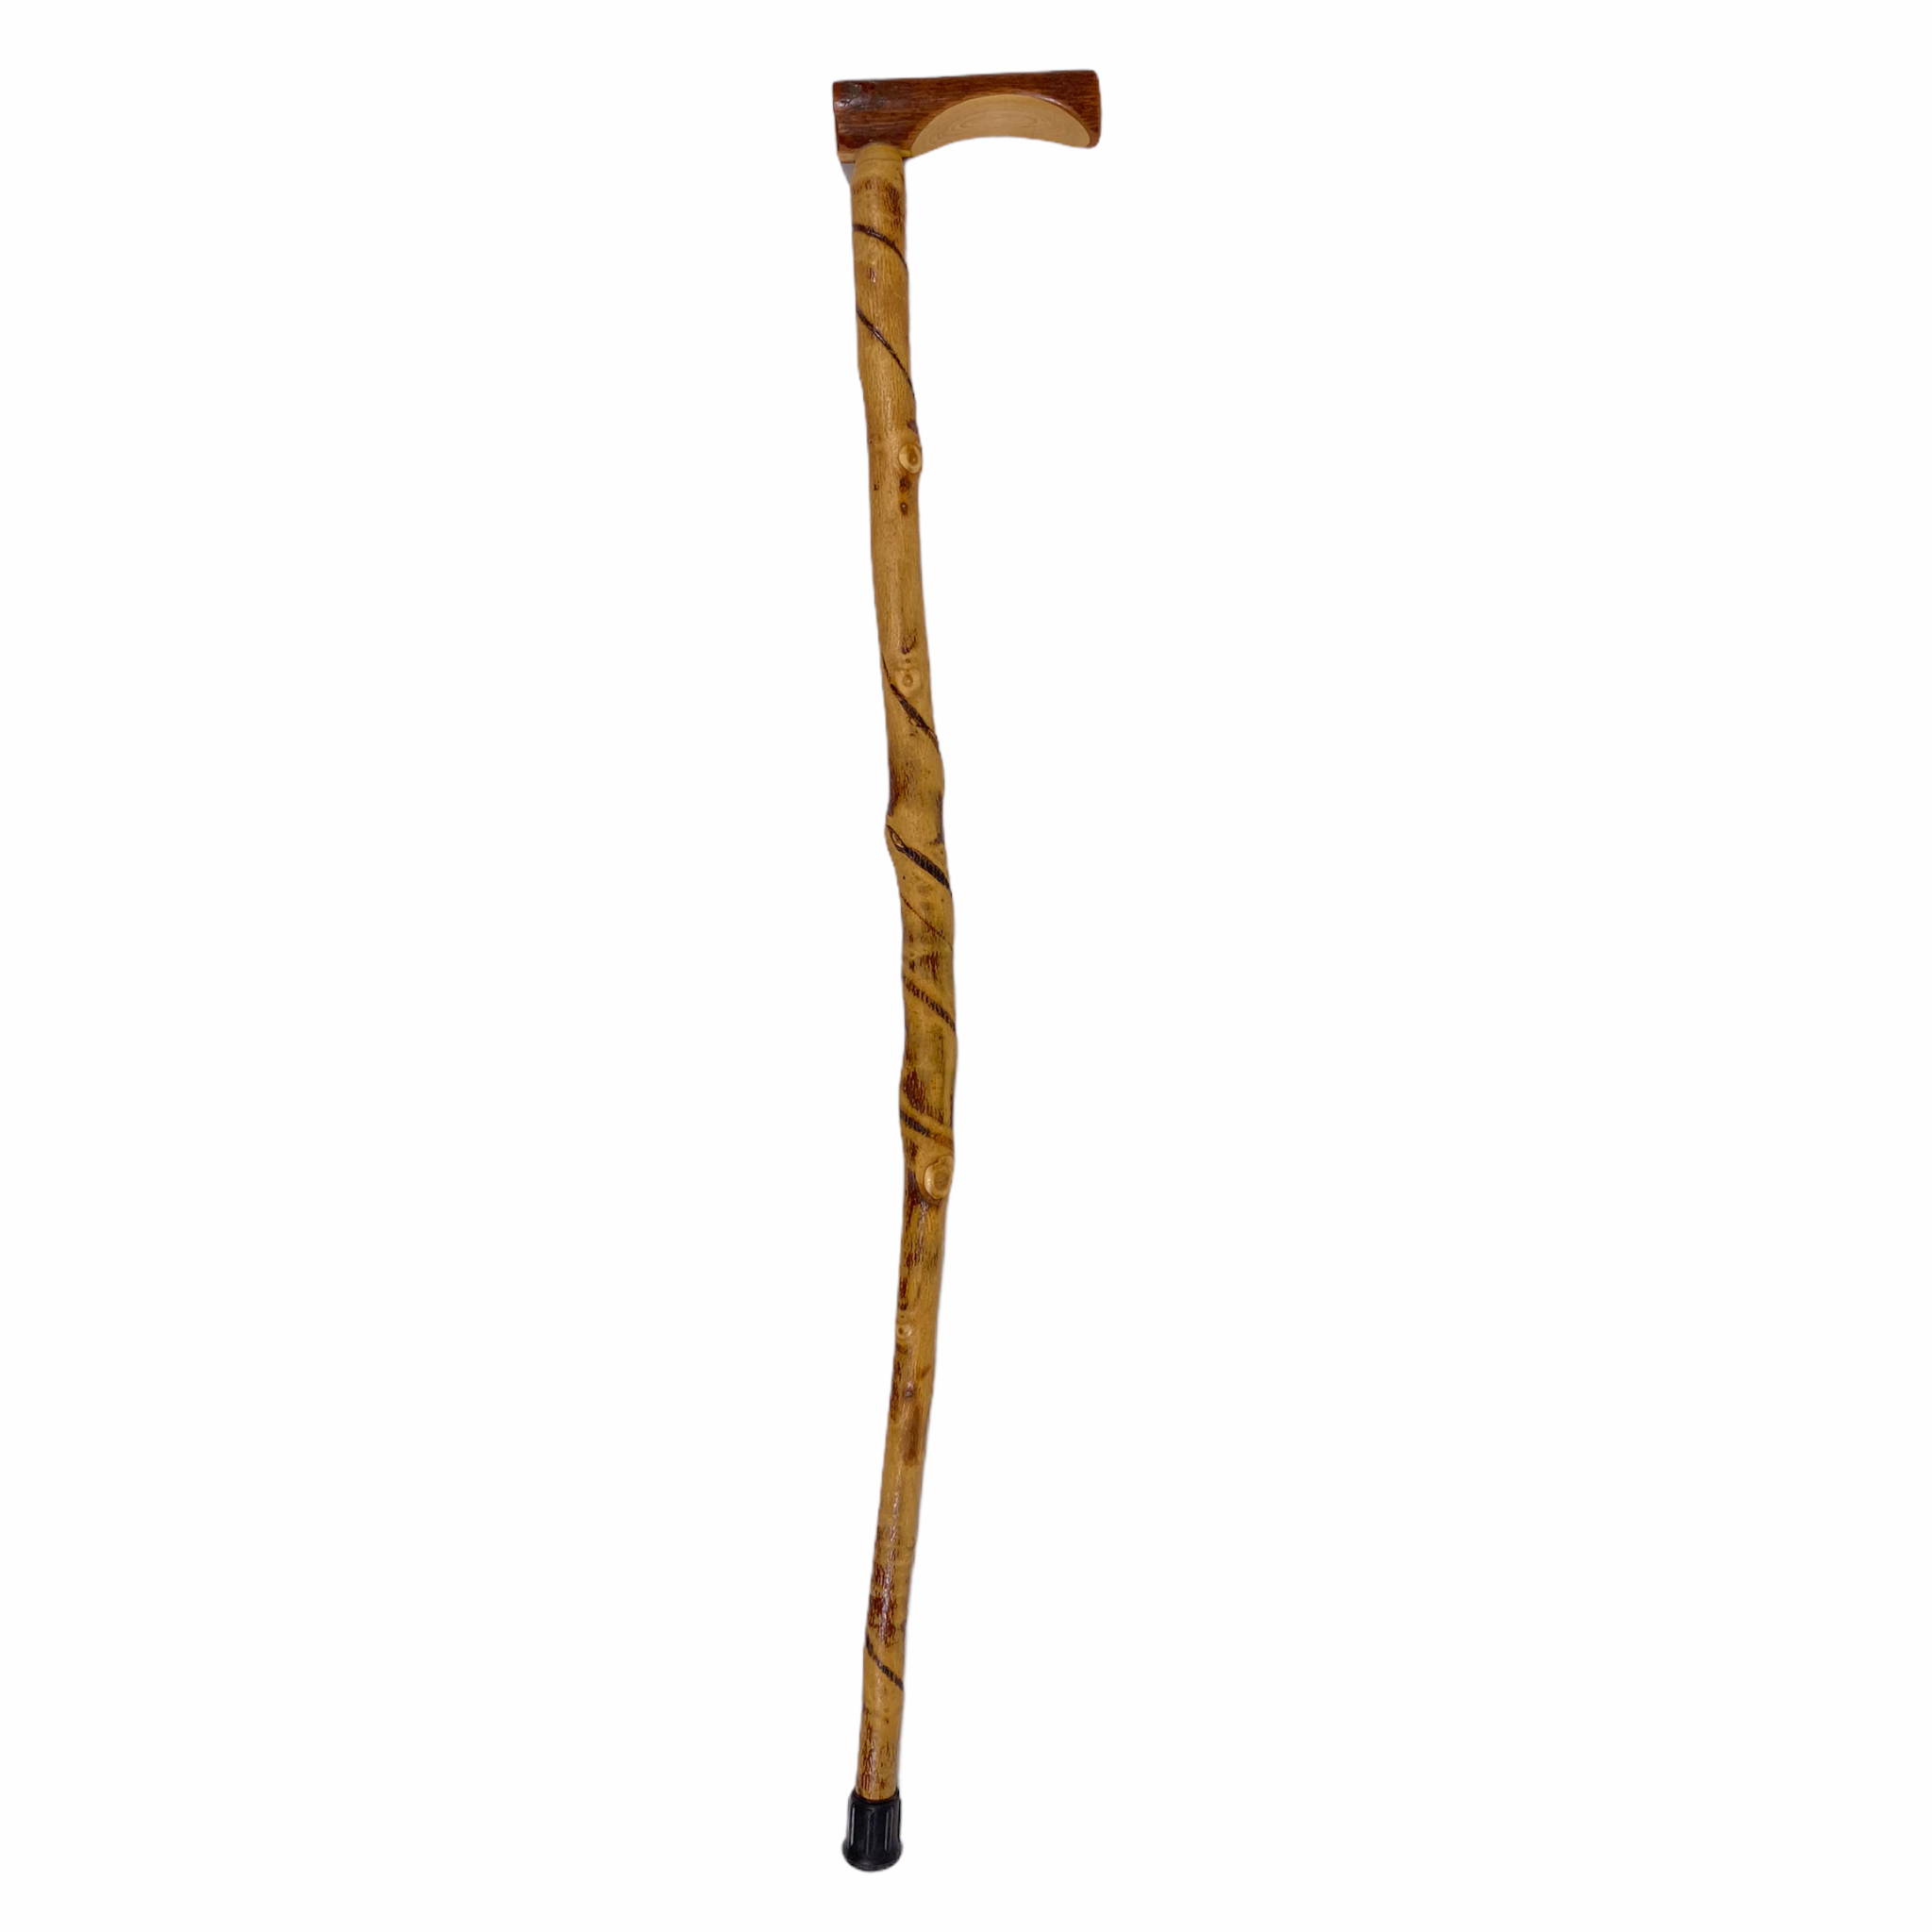 Get Natural Spiral Vine Twisted Wood Walking Cane - 36.5 Online